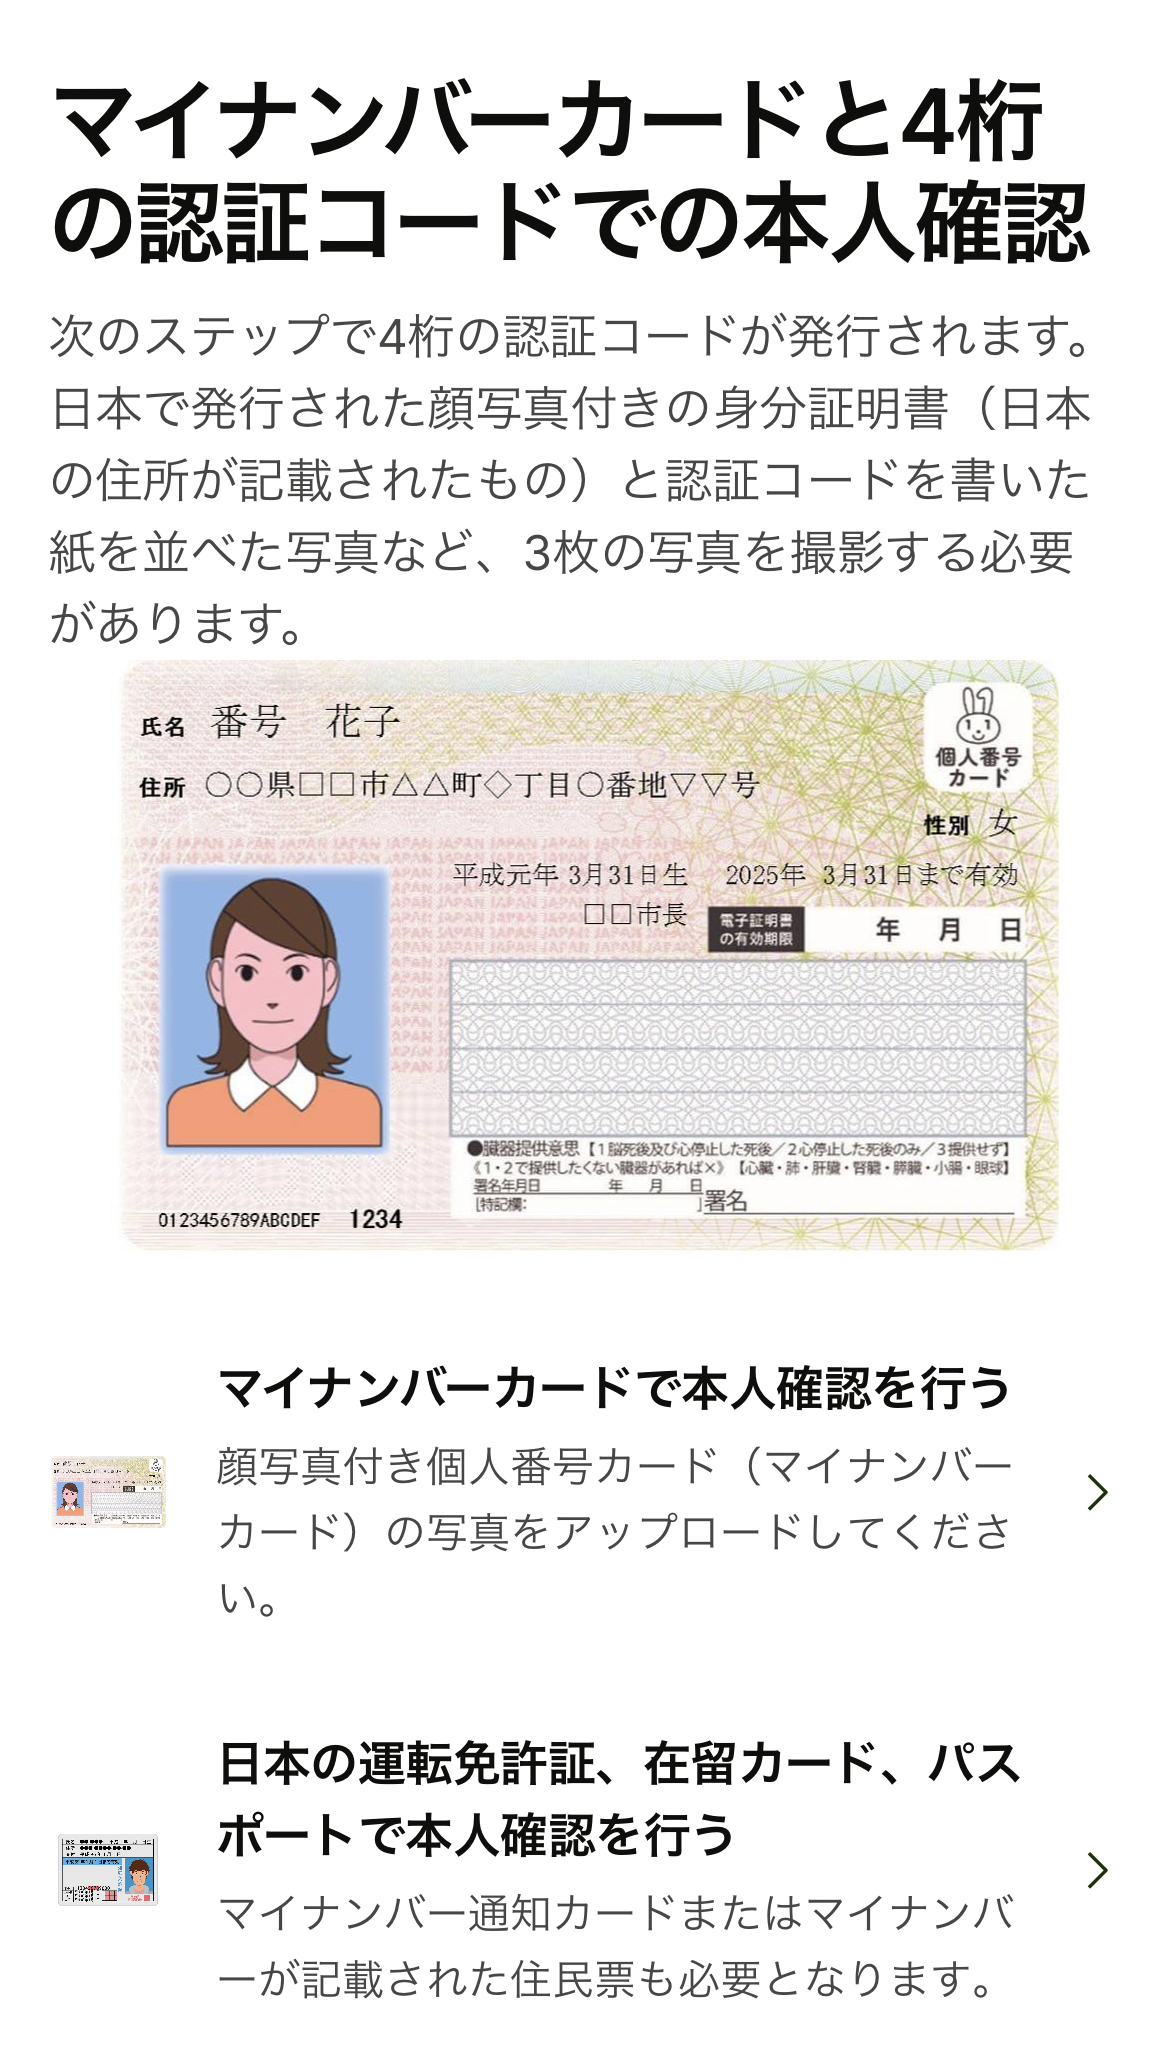 日本から韓国への送金サービスWise（ワイズ）の送金方法